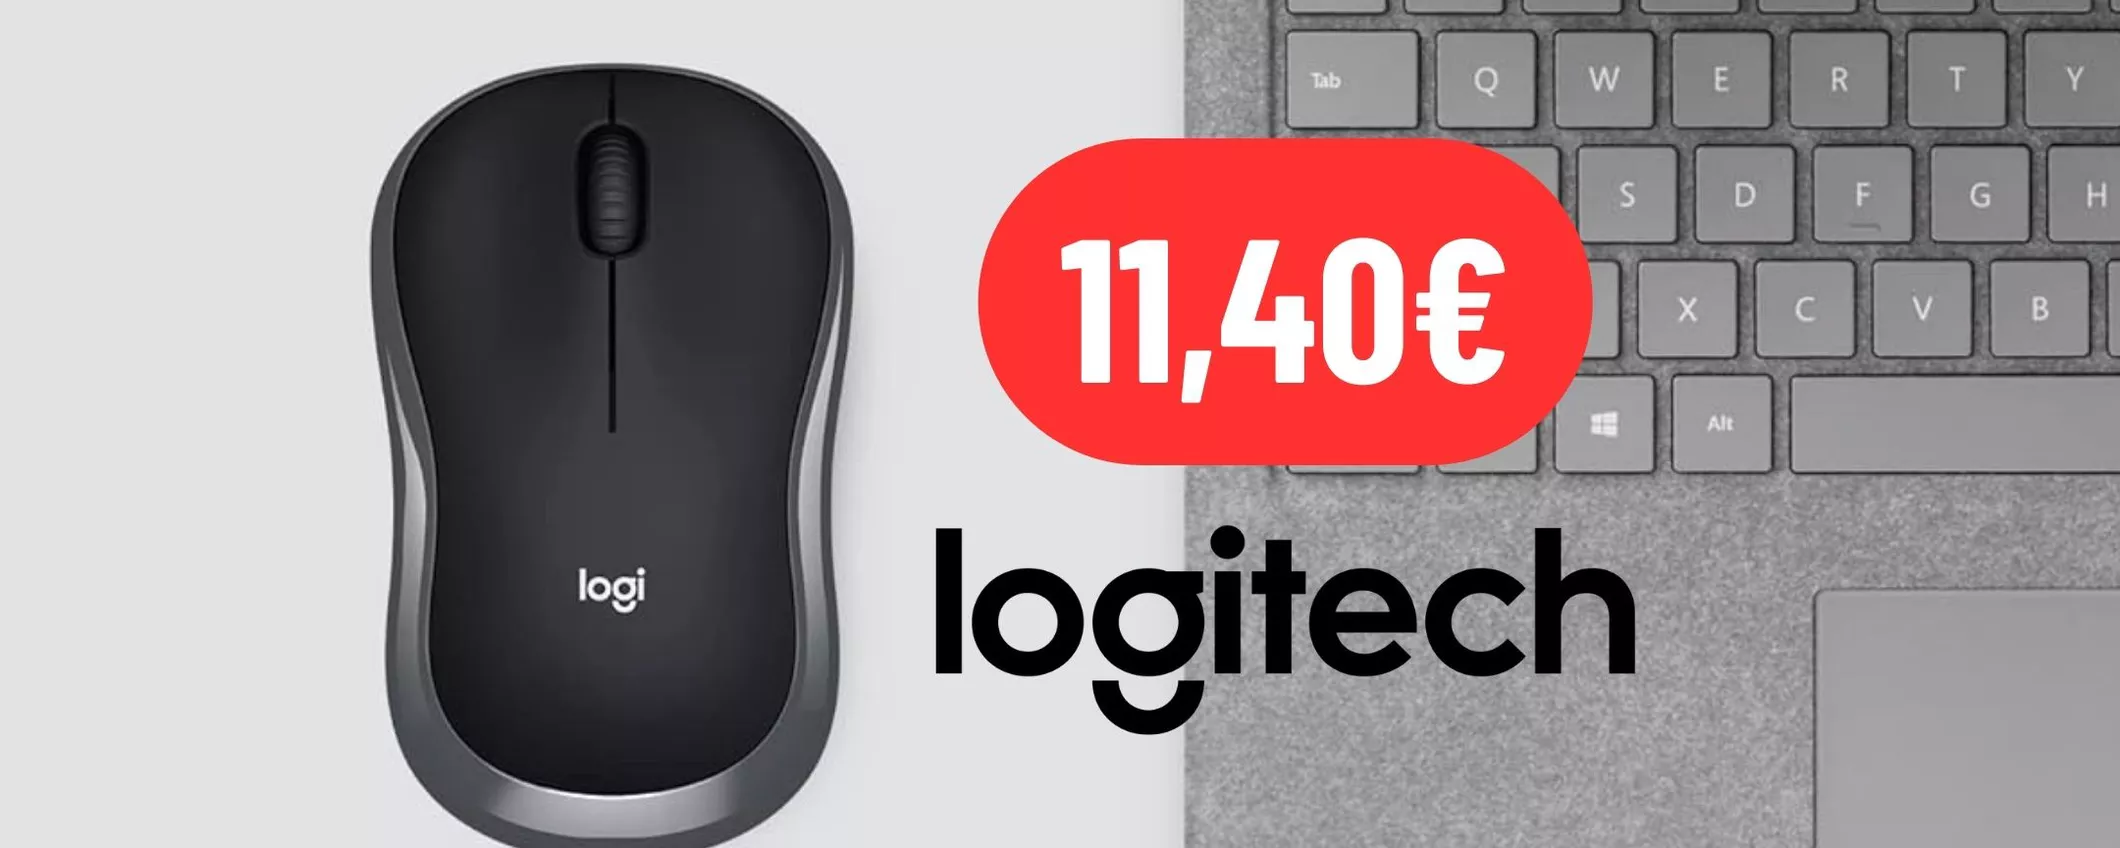 Mouse Logitech piccolo, compatto e preciso a 11,40€ su Amazon